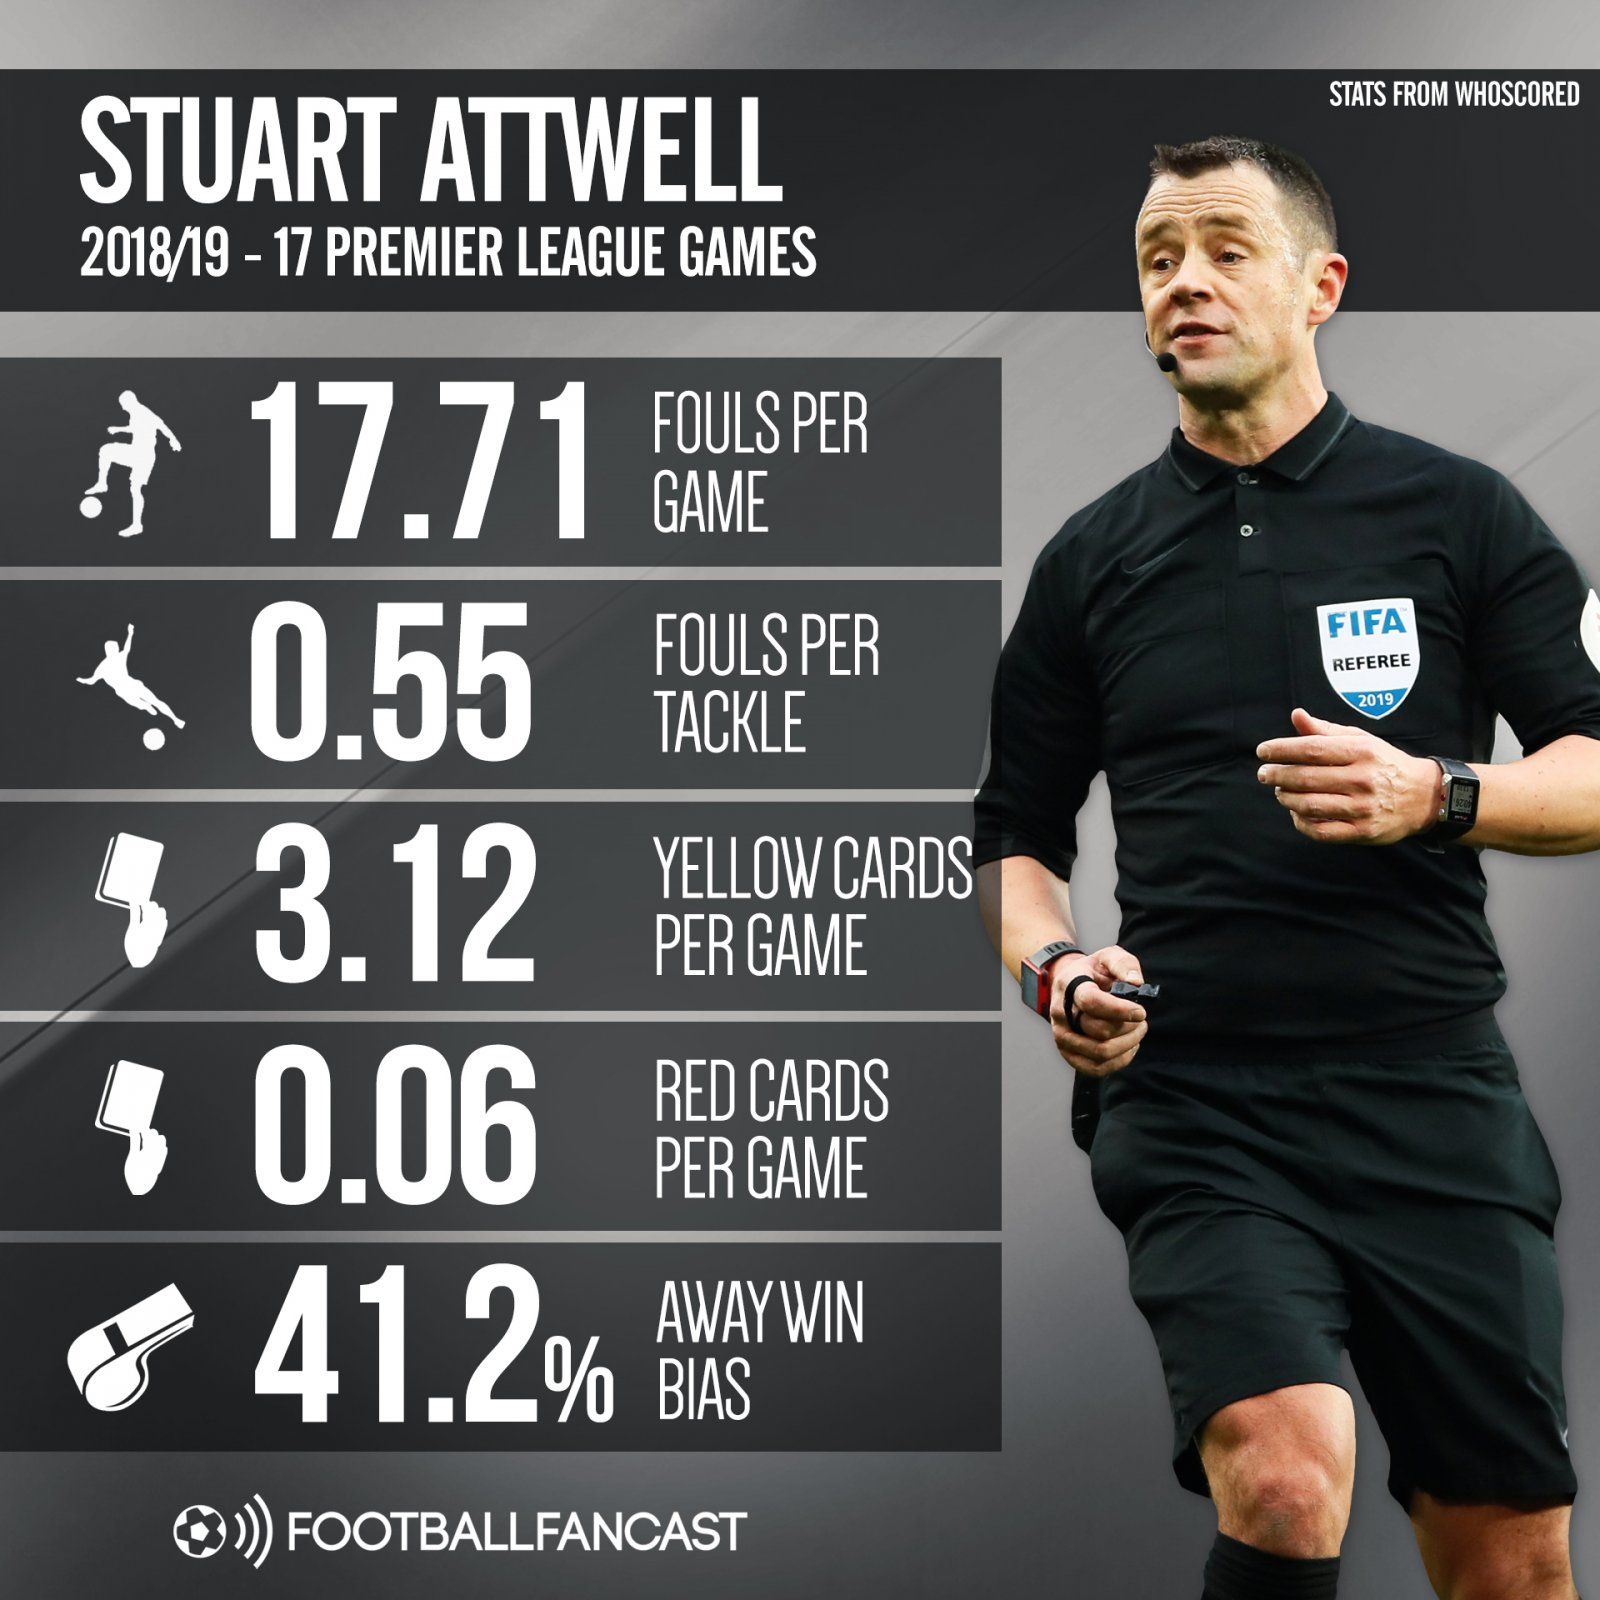 Stuart Attwell's 2018-19 Premier League record